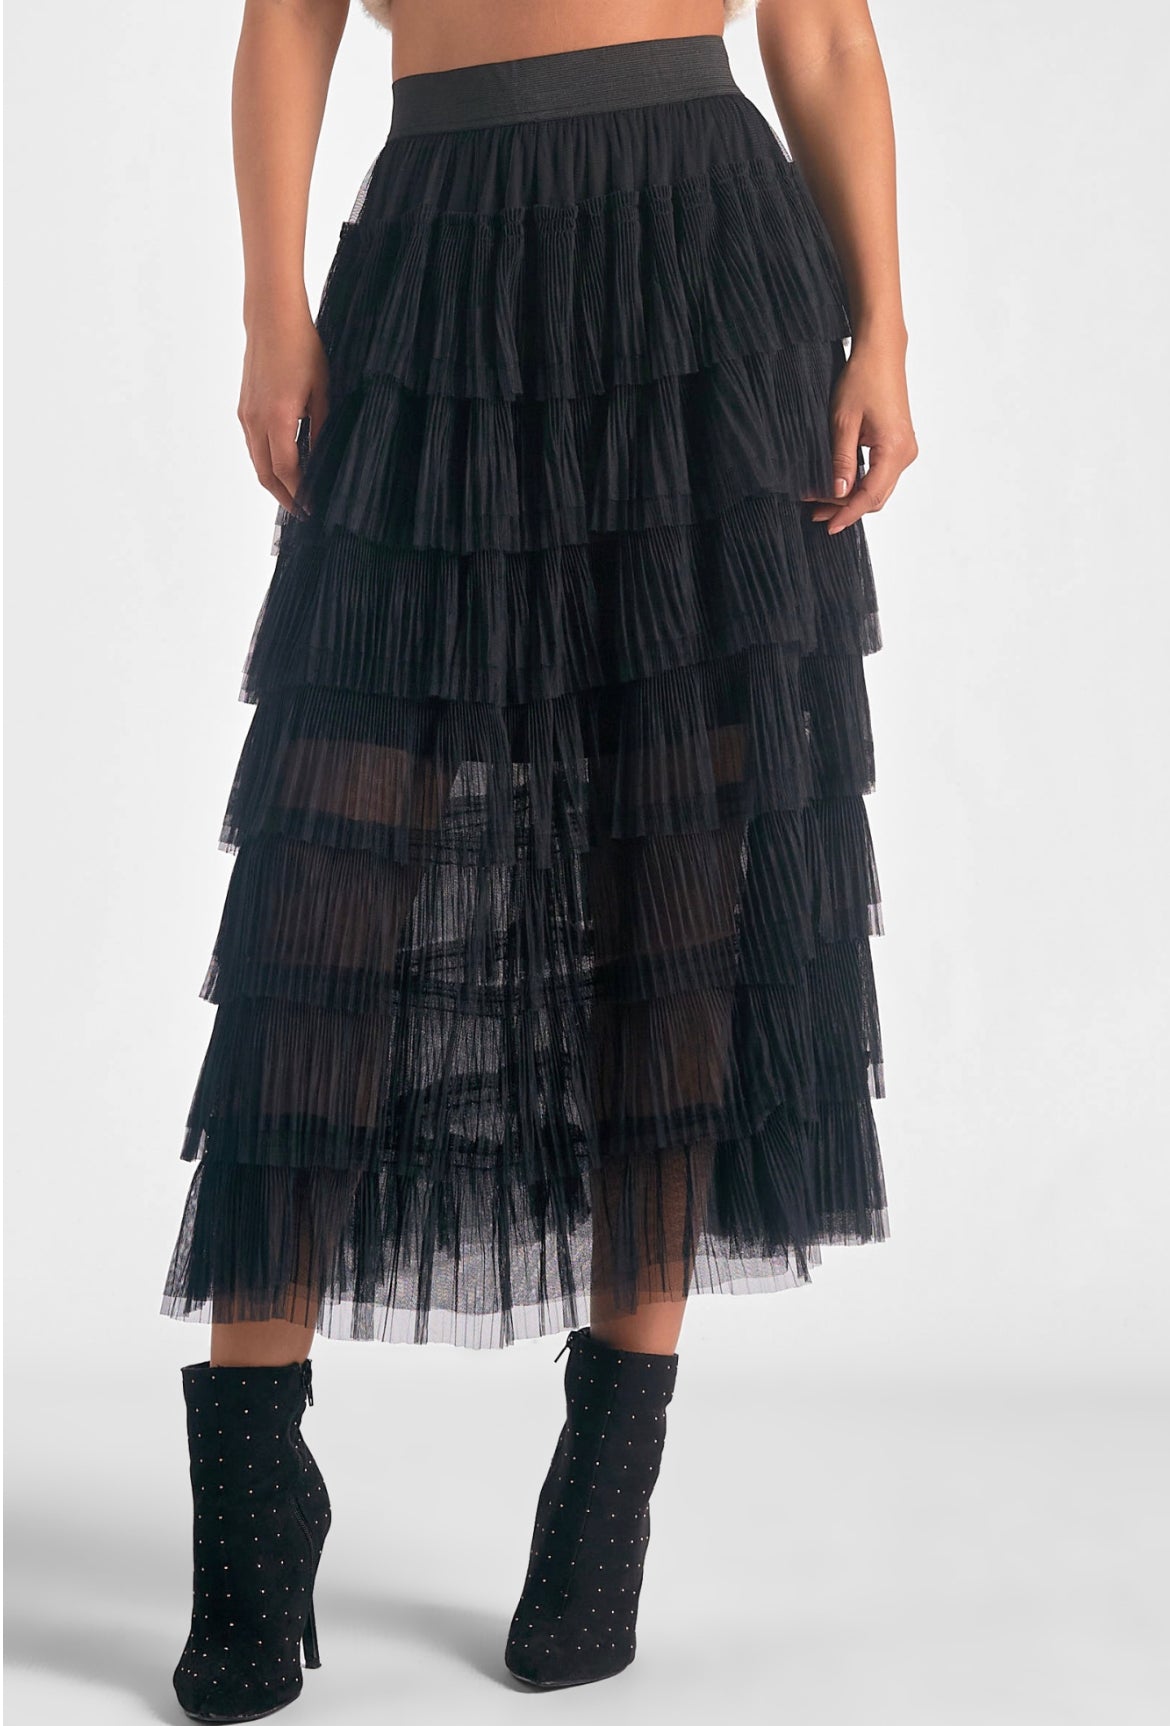 Elan Tuille Layered Skirt, Black